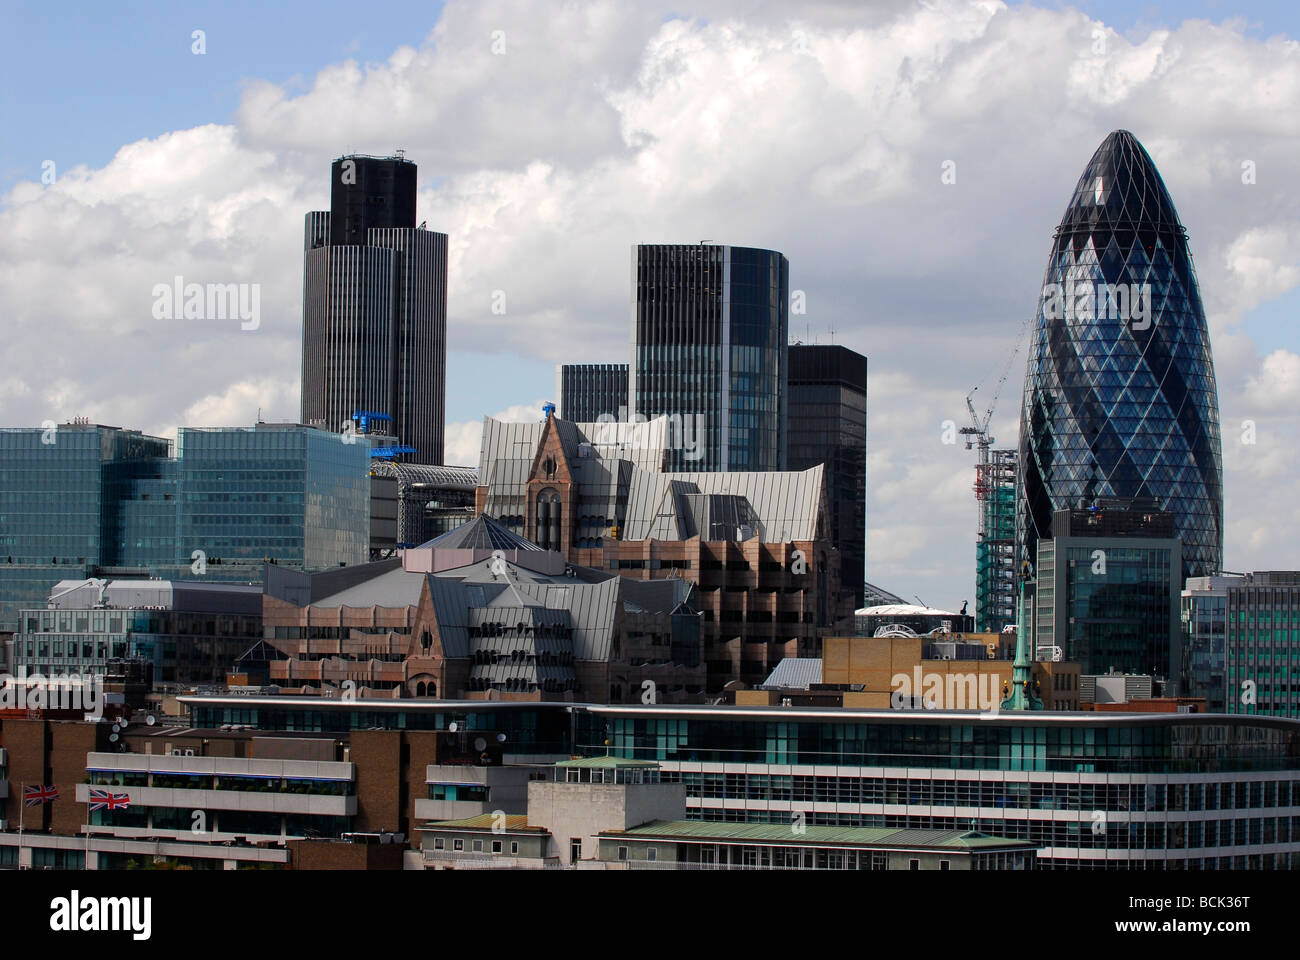 City of London zeigt eine Reihe von Unternehmen und Finanzinstitutionen, darunter das berühmte Gherkin Building, London UK. Stockfoto